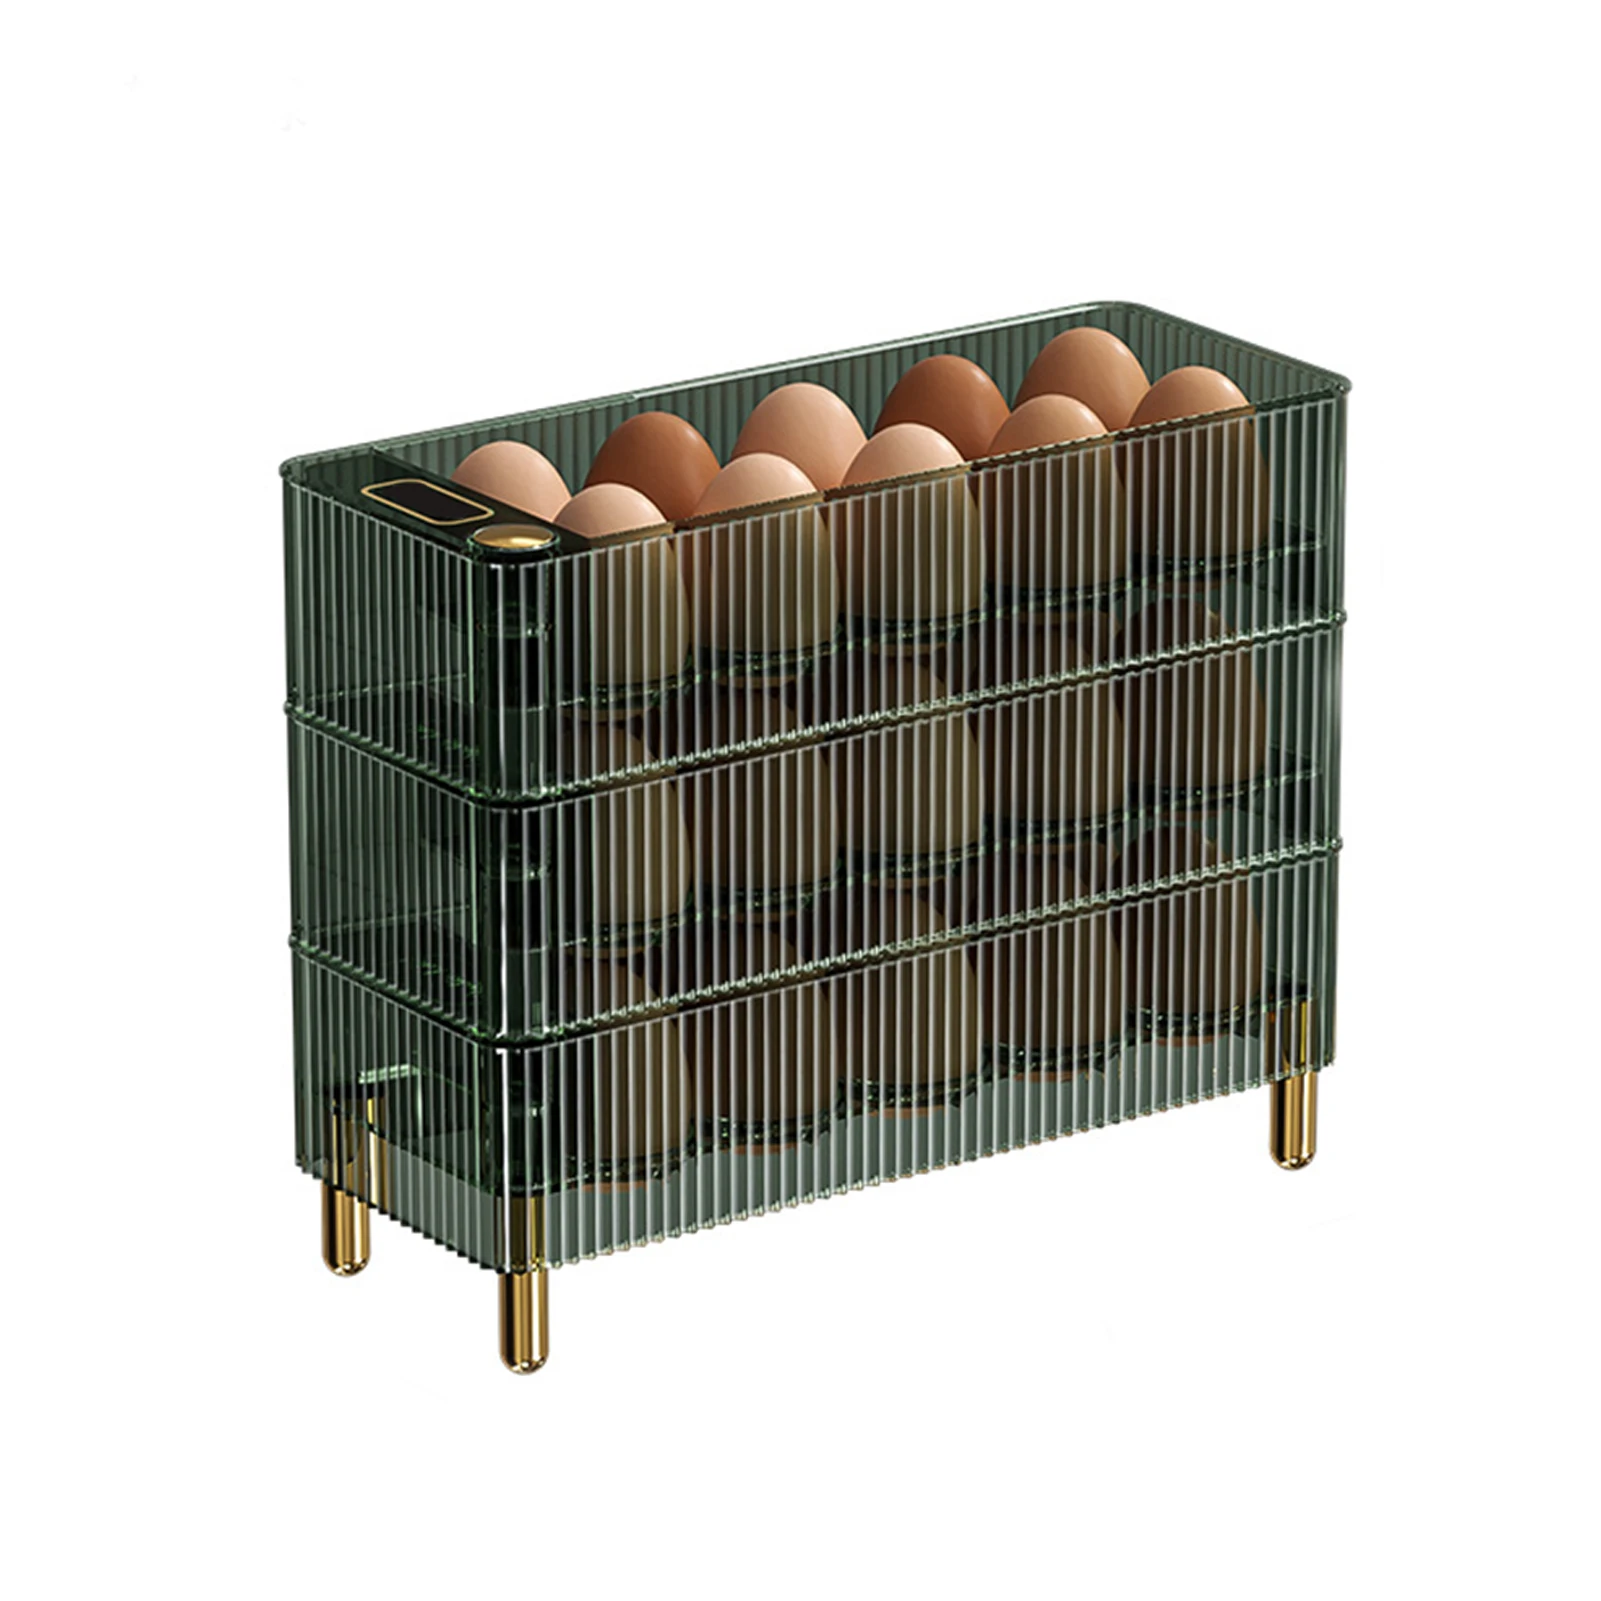 

Креативная вращающаяся коробка для хранения яиц, большая емкость, холодильник, контейнер для яиц